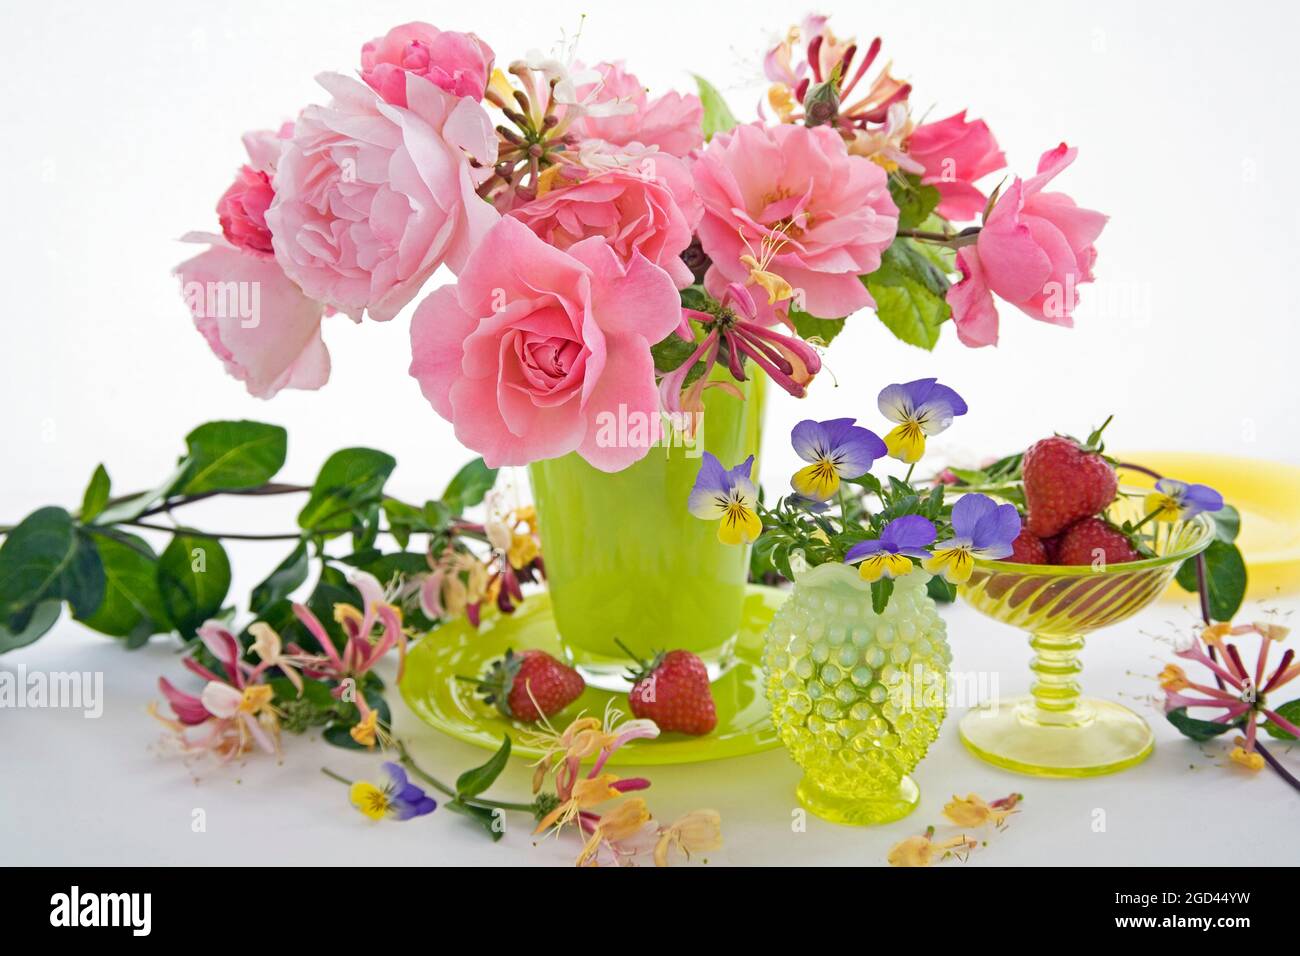 botanique, roses, chèvrefeuille ( lonicera ) et pansies en vases de verre jaune, DROITS-SUPPLÉMENTAIRES-DÉGAGEMENT-INFO-NON-DISPONIBLE Banque D'Images